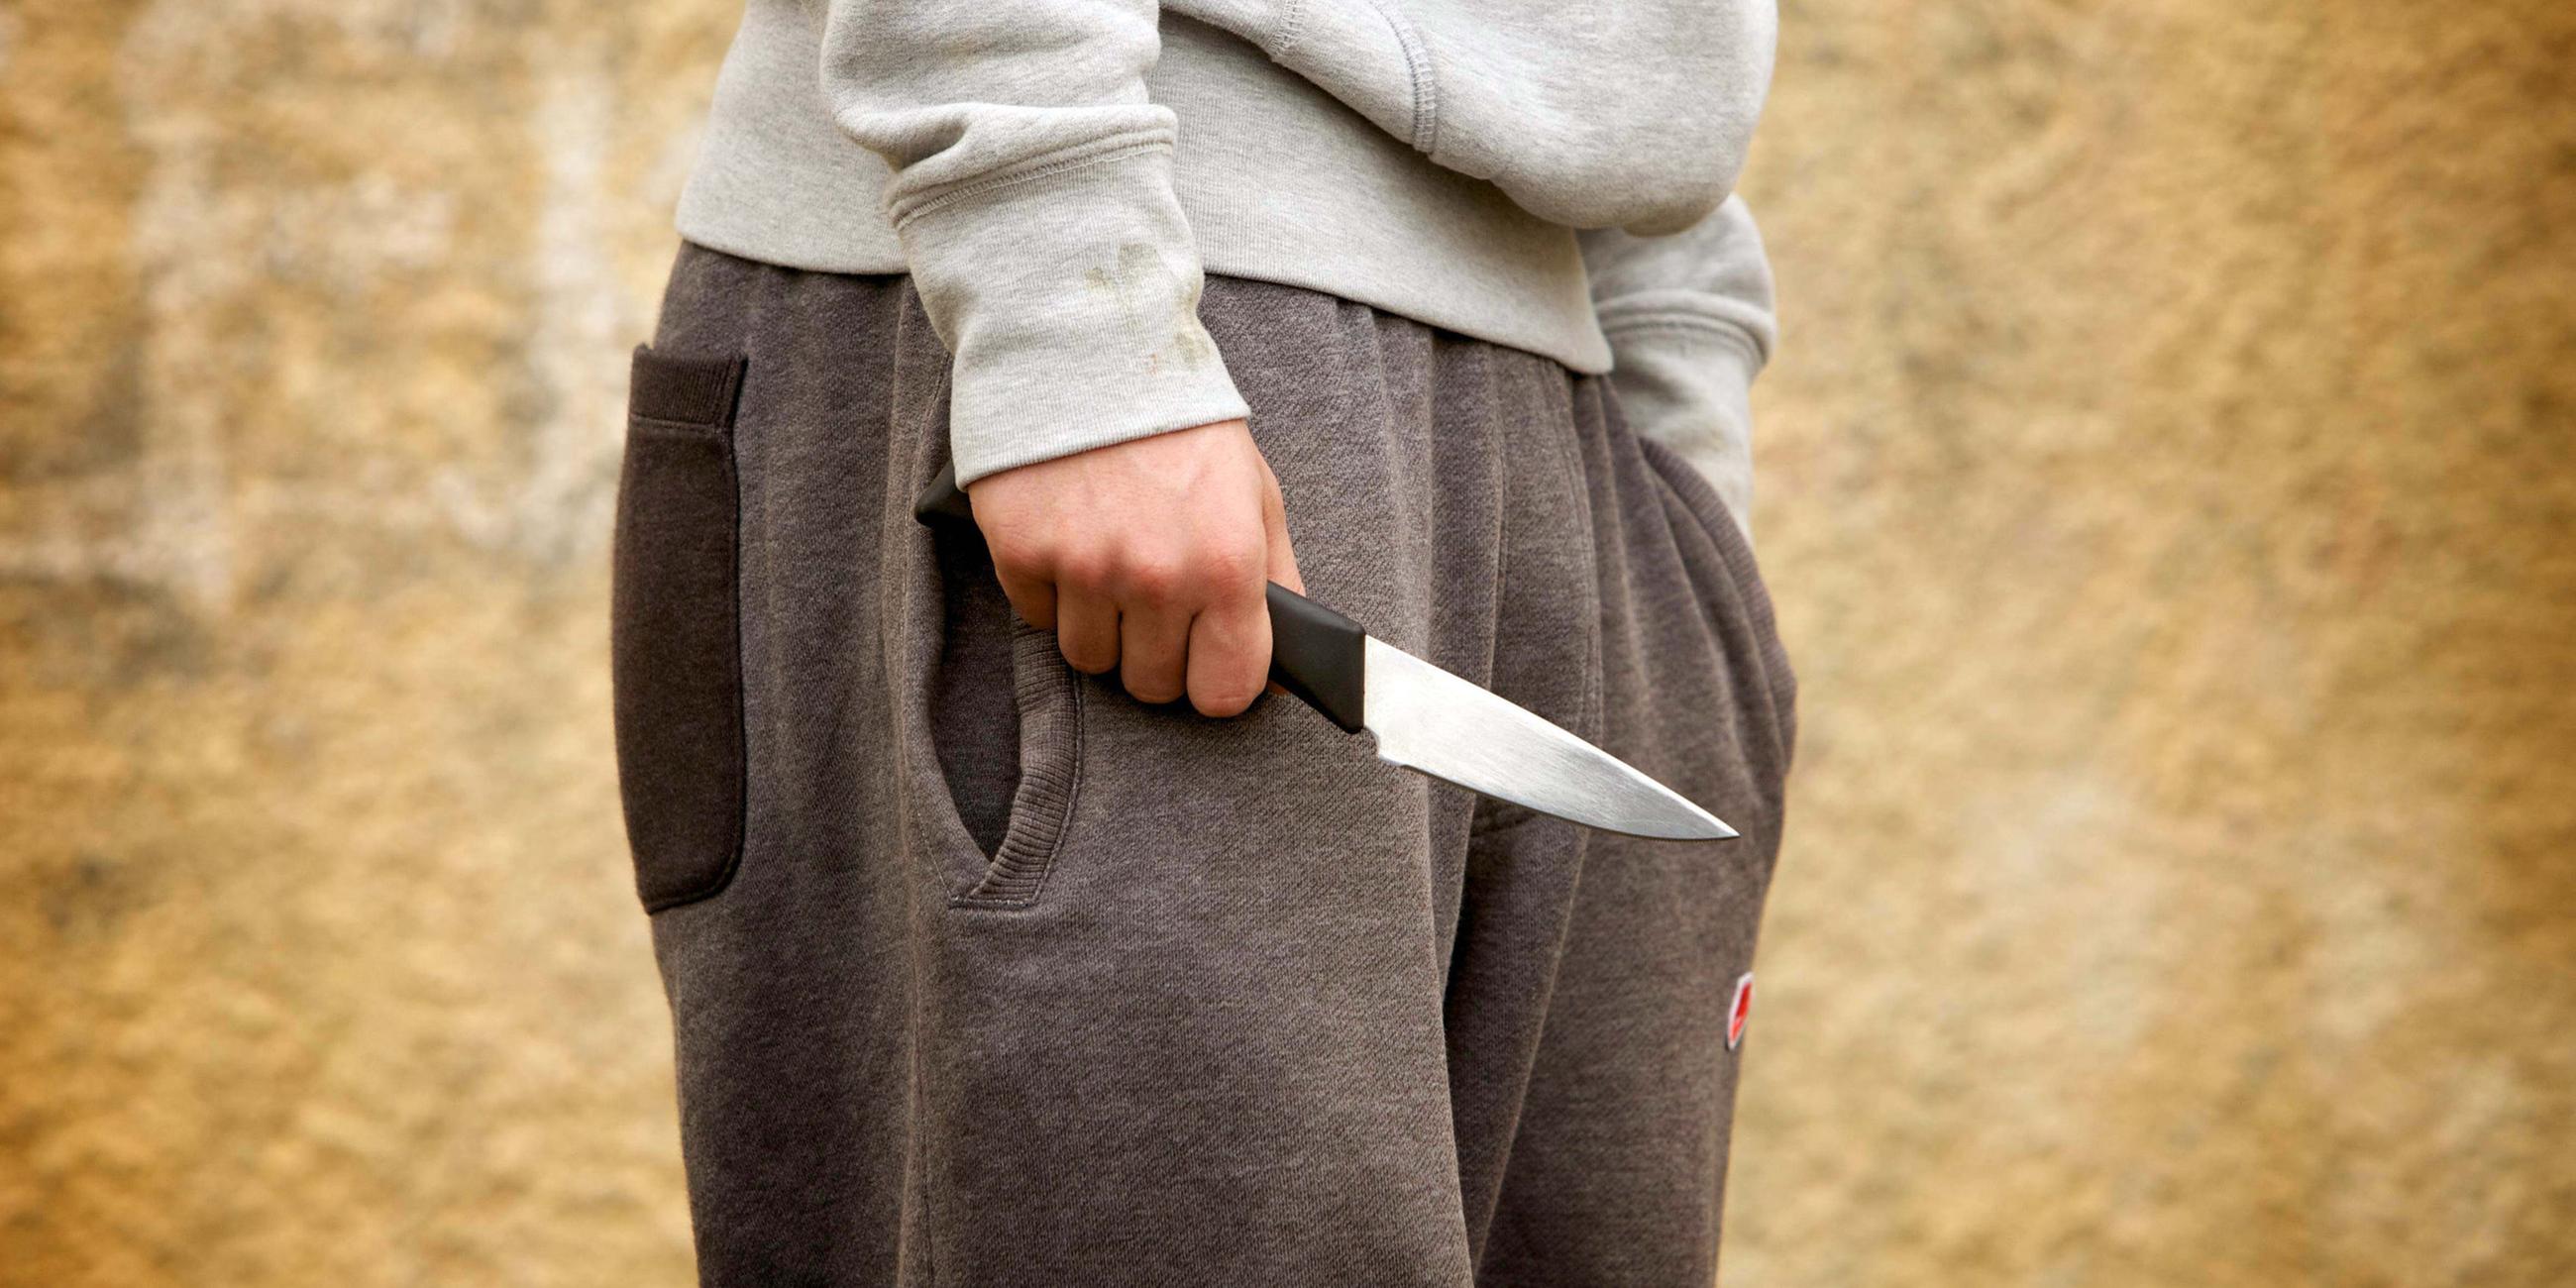 Zu sehen ist ein Symboldbild, in dem ein Junge ein Messer hält.